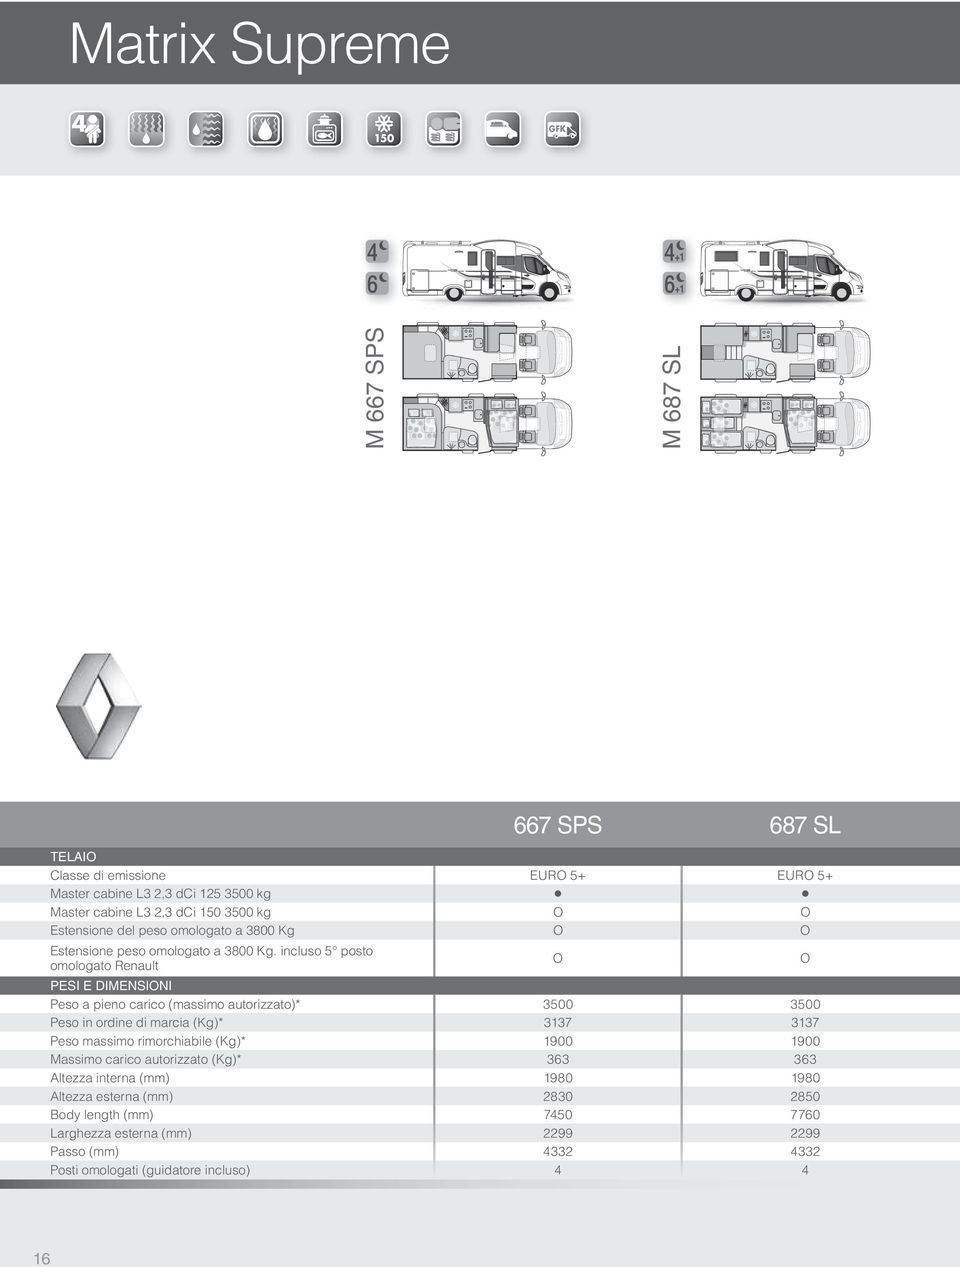 incluso 5 posto omologato Renault PESI E DIMENSINI Peso a pieno carico (massimo autorizzato)* 3500 3500 Peso in ordine di marcia (Kg)* 3137 3137 Peso massimo